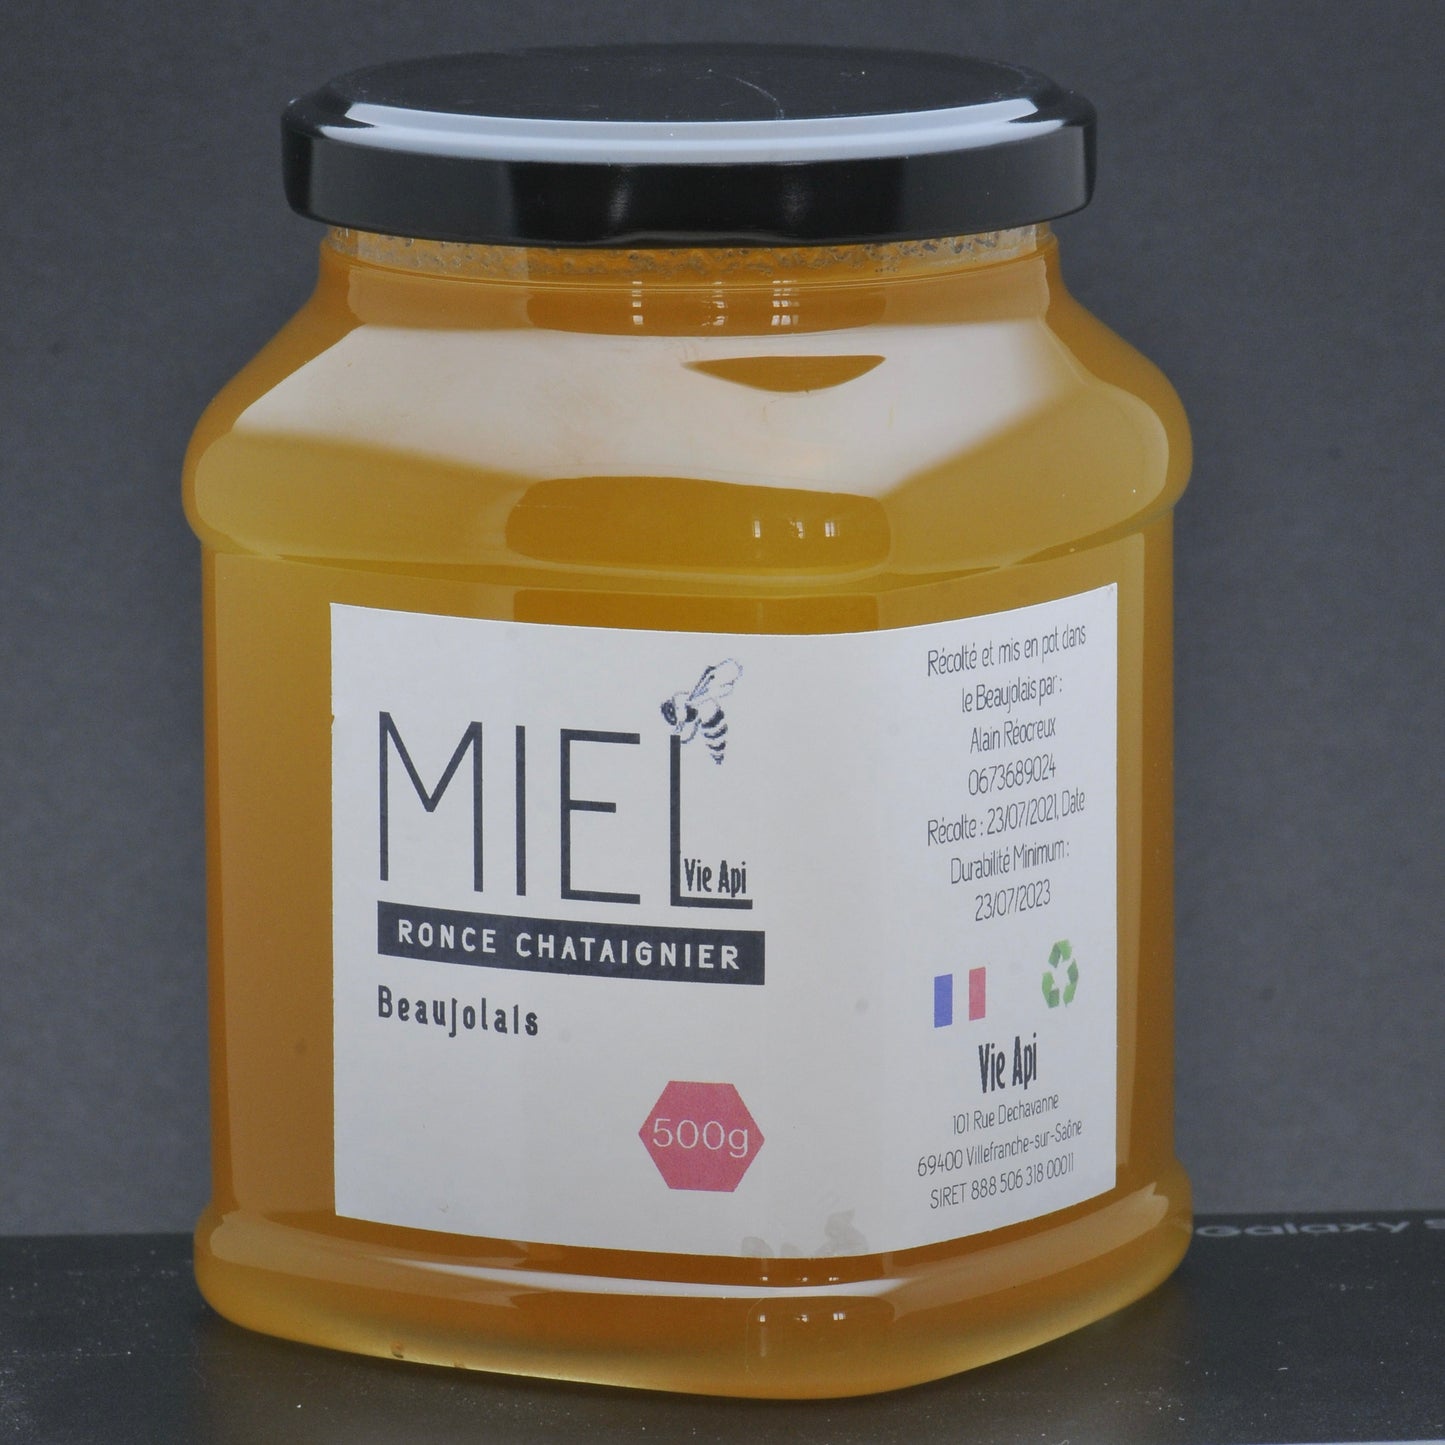 500g miel ronce châtaignier Beaujolais pot recyclable à vie Vie Api Villefranche sur Saône